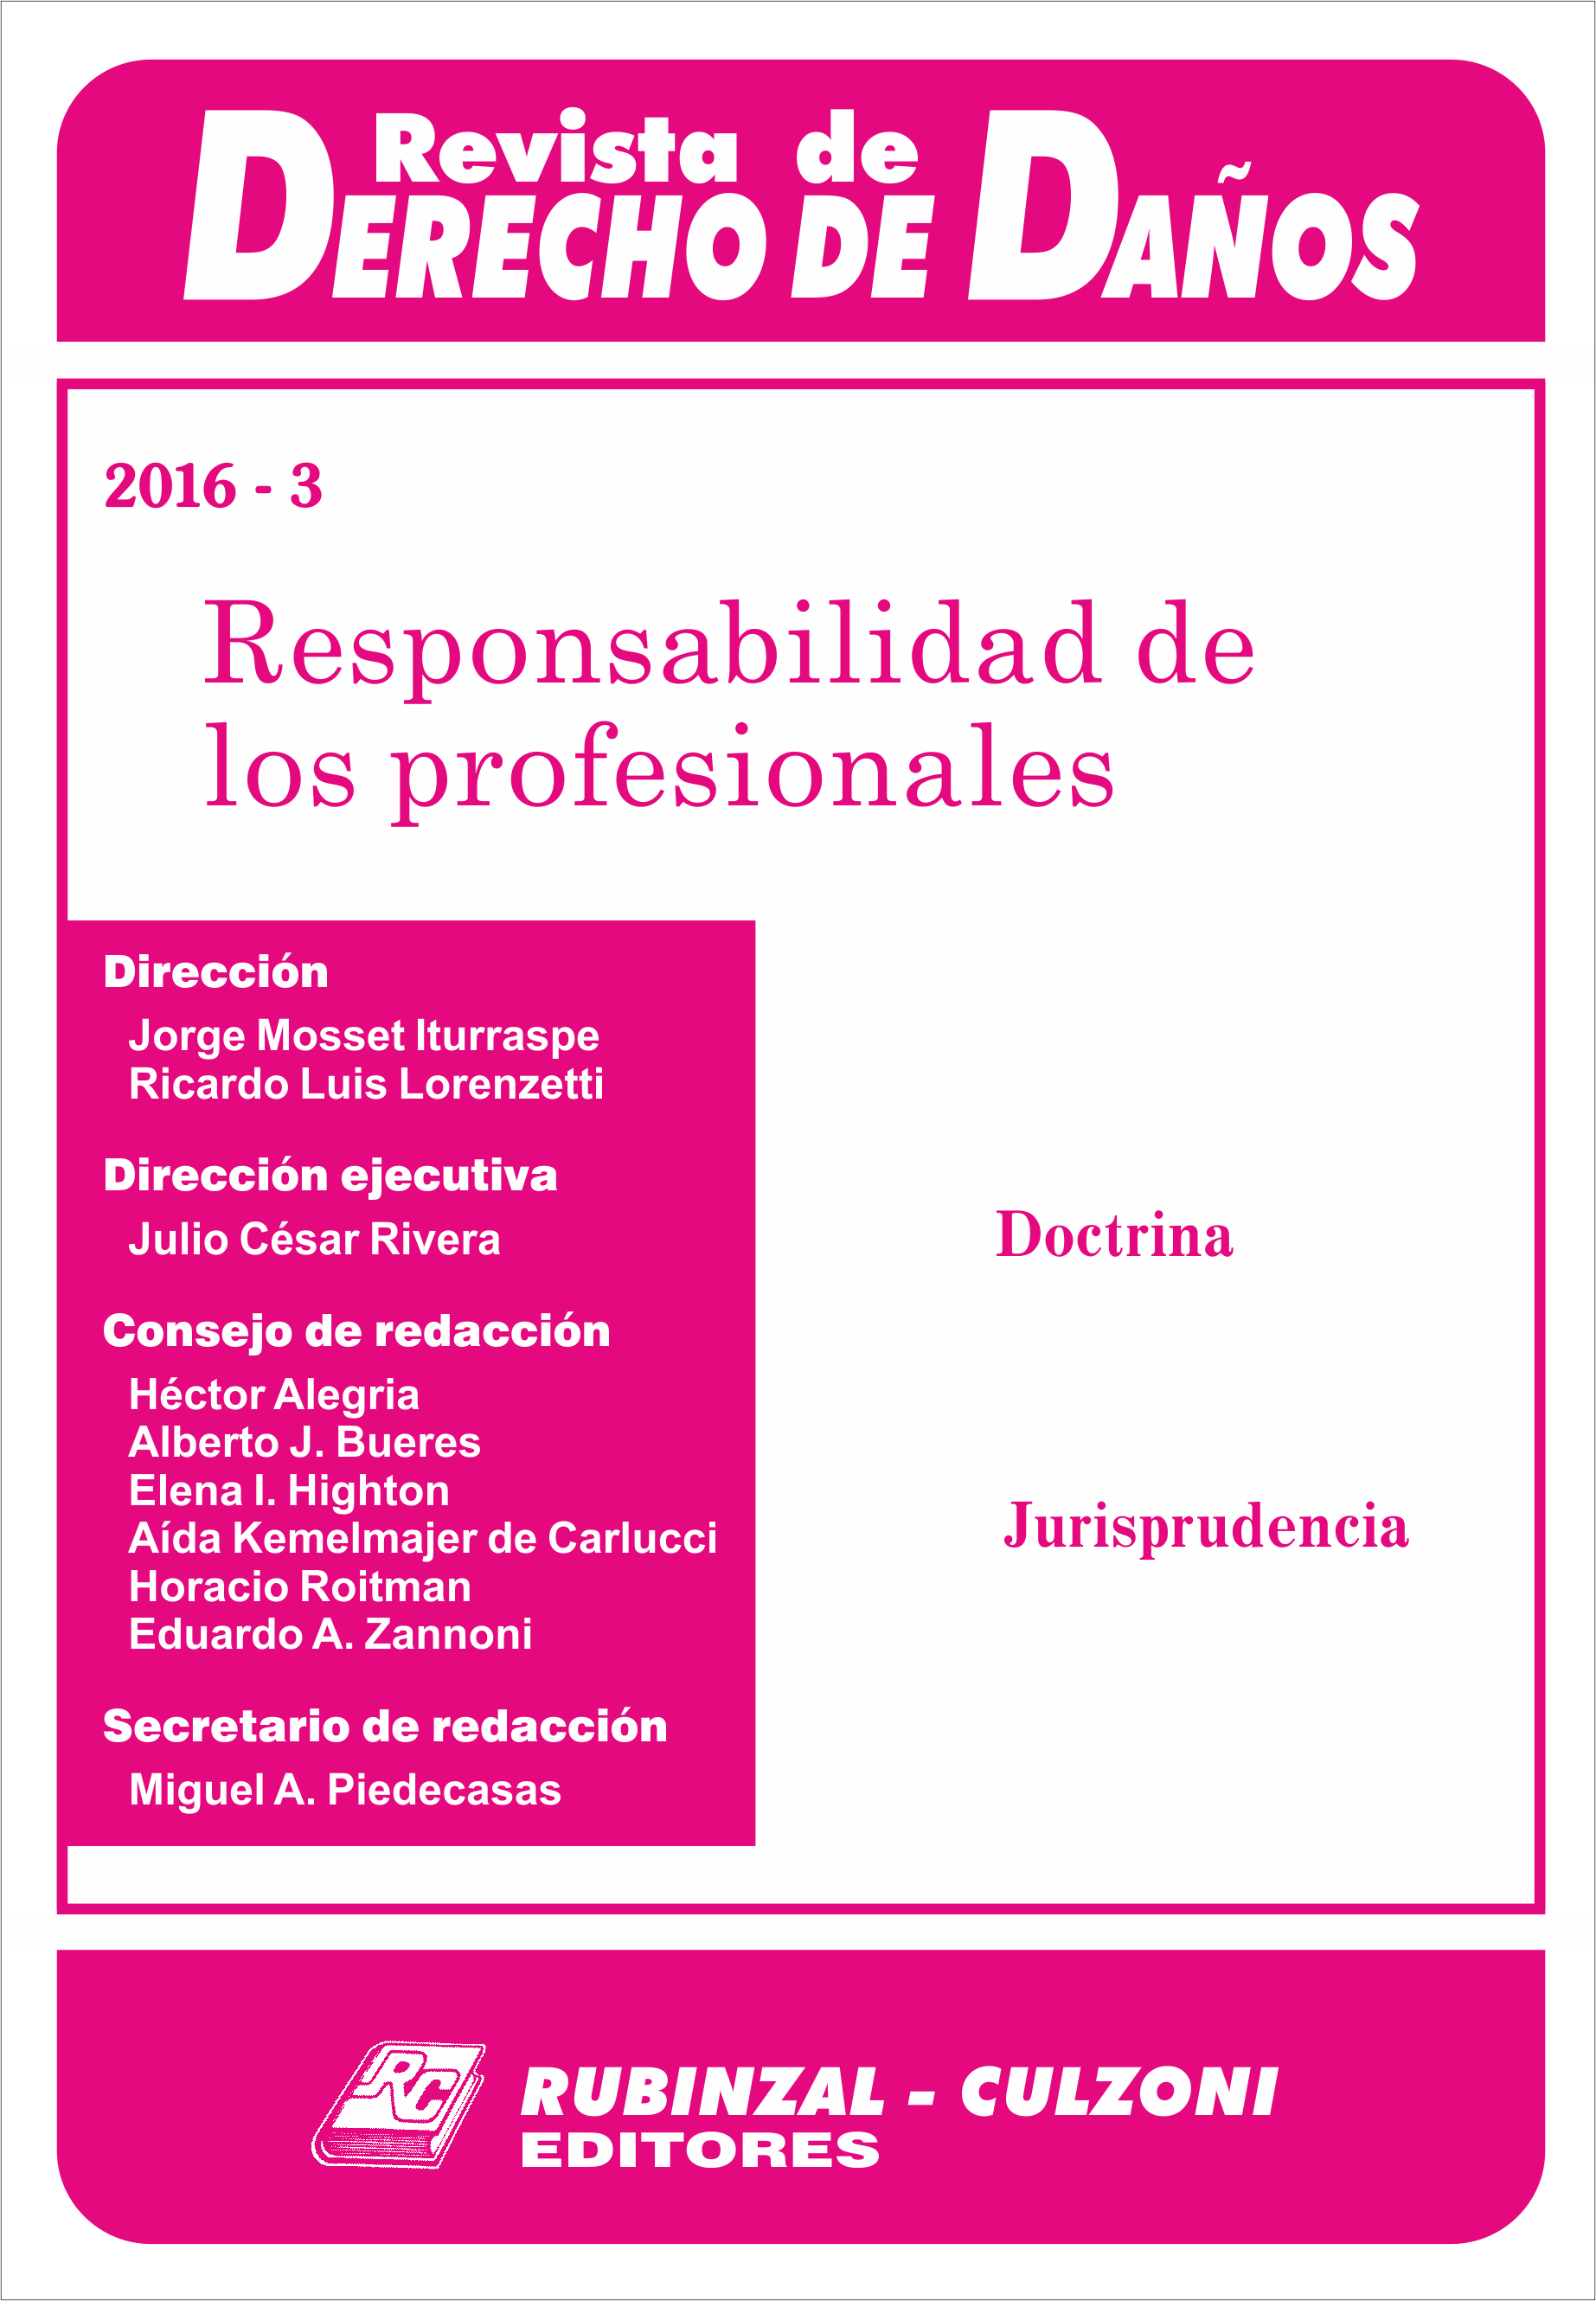 Revista de Derecho de Daños - Responsabilidad de los profesionales.